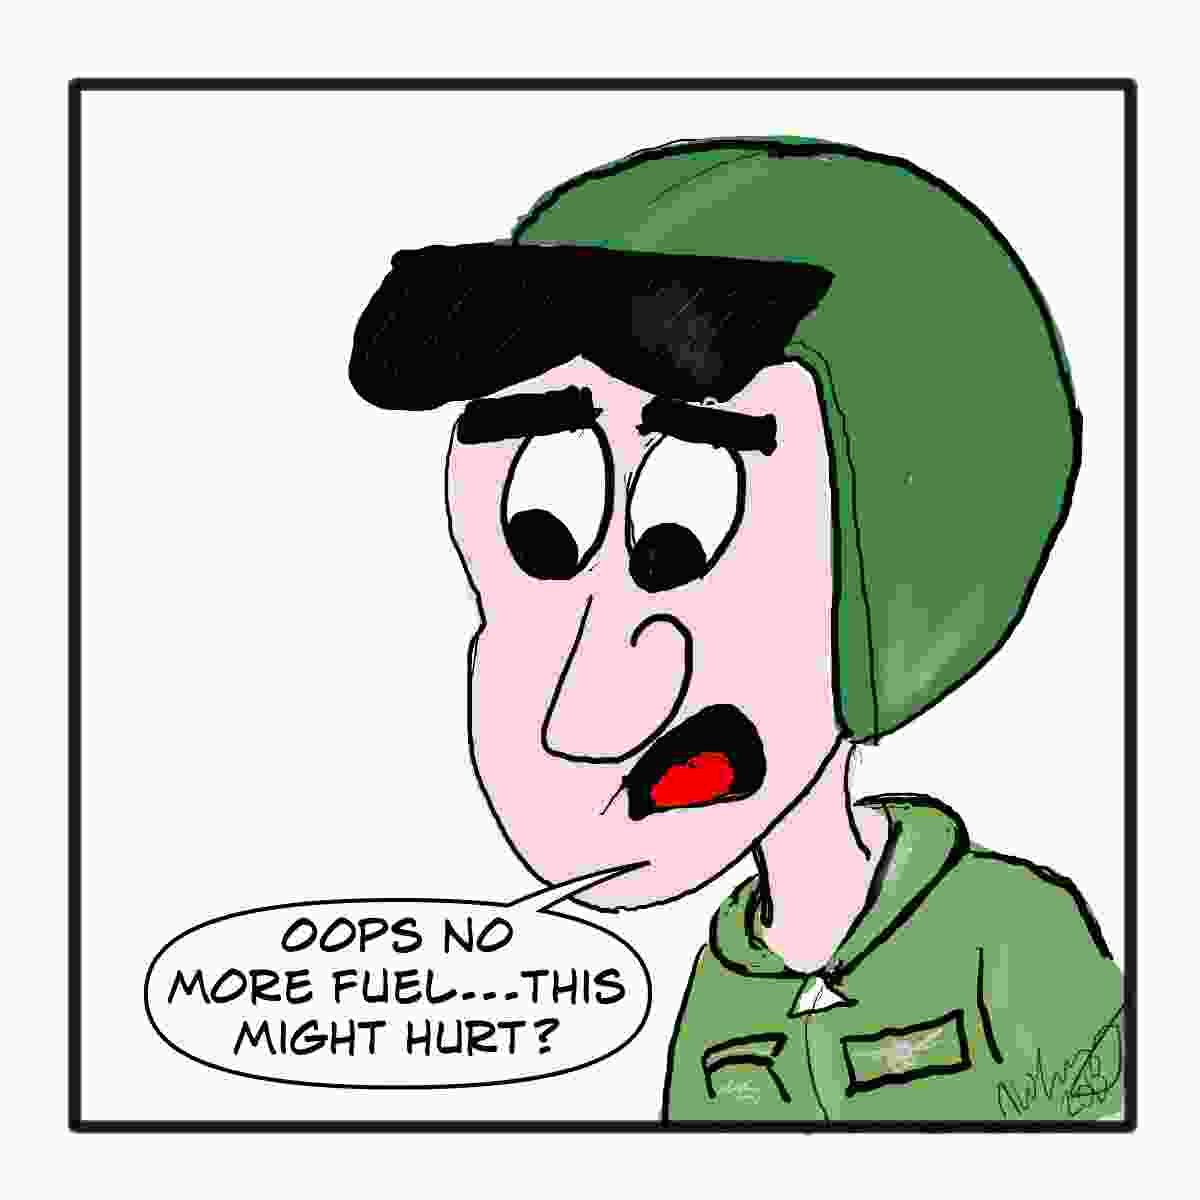 army-humor-pilot-no-fuel